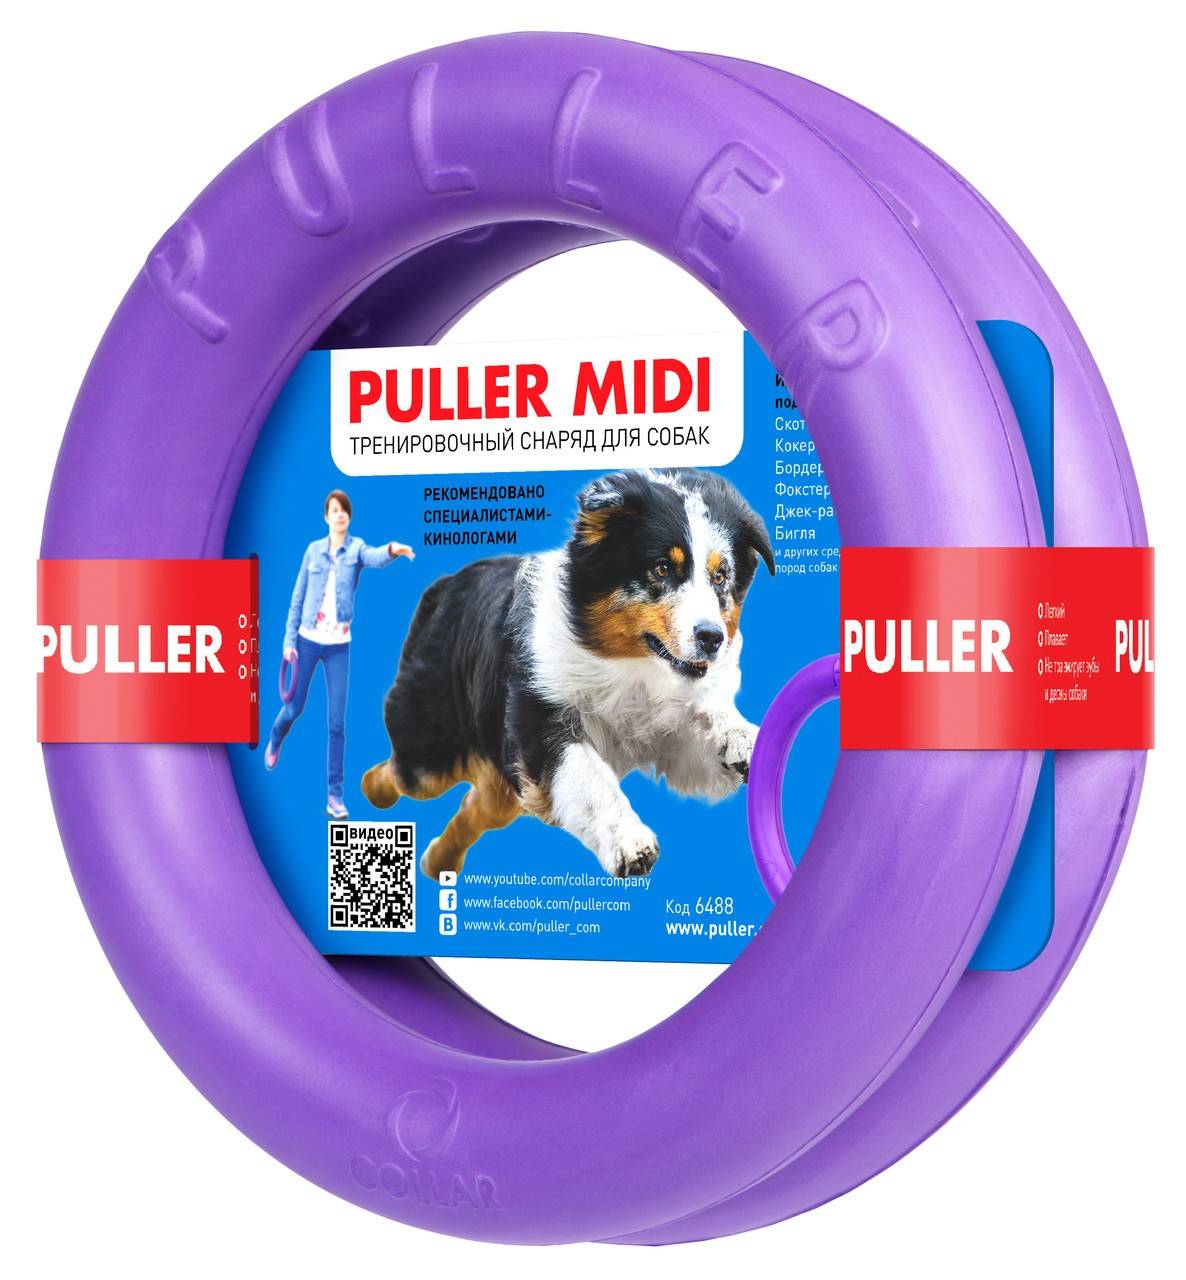 PULLER MIDI – тренировочный снаряд для собак